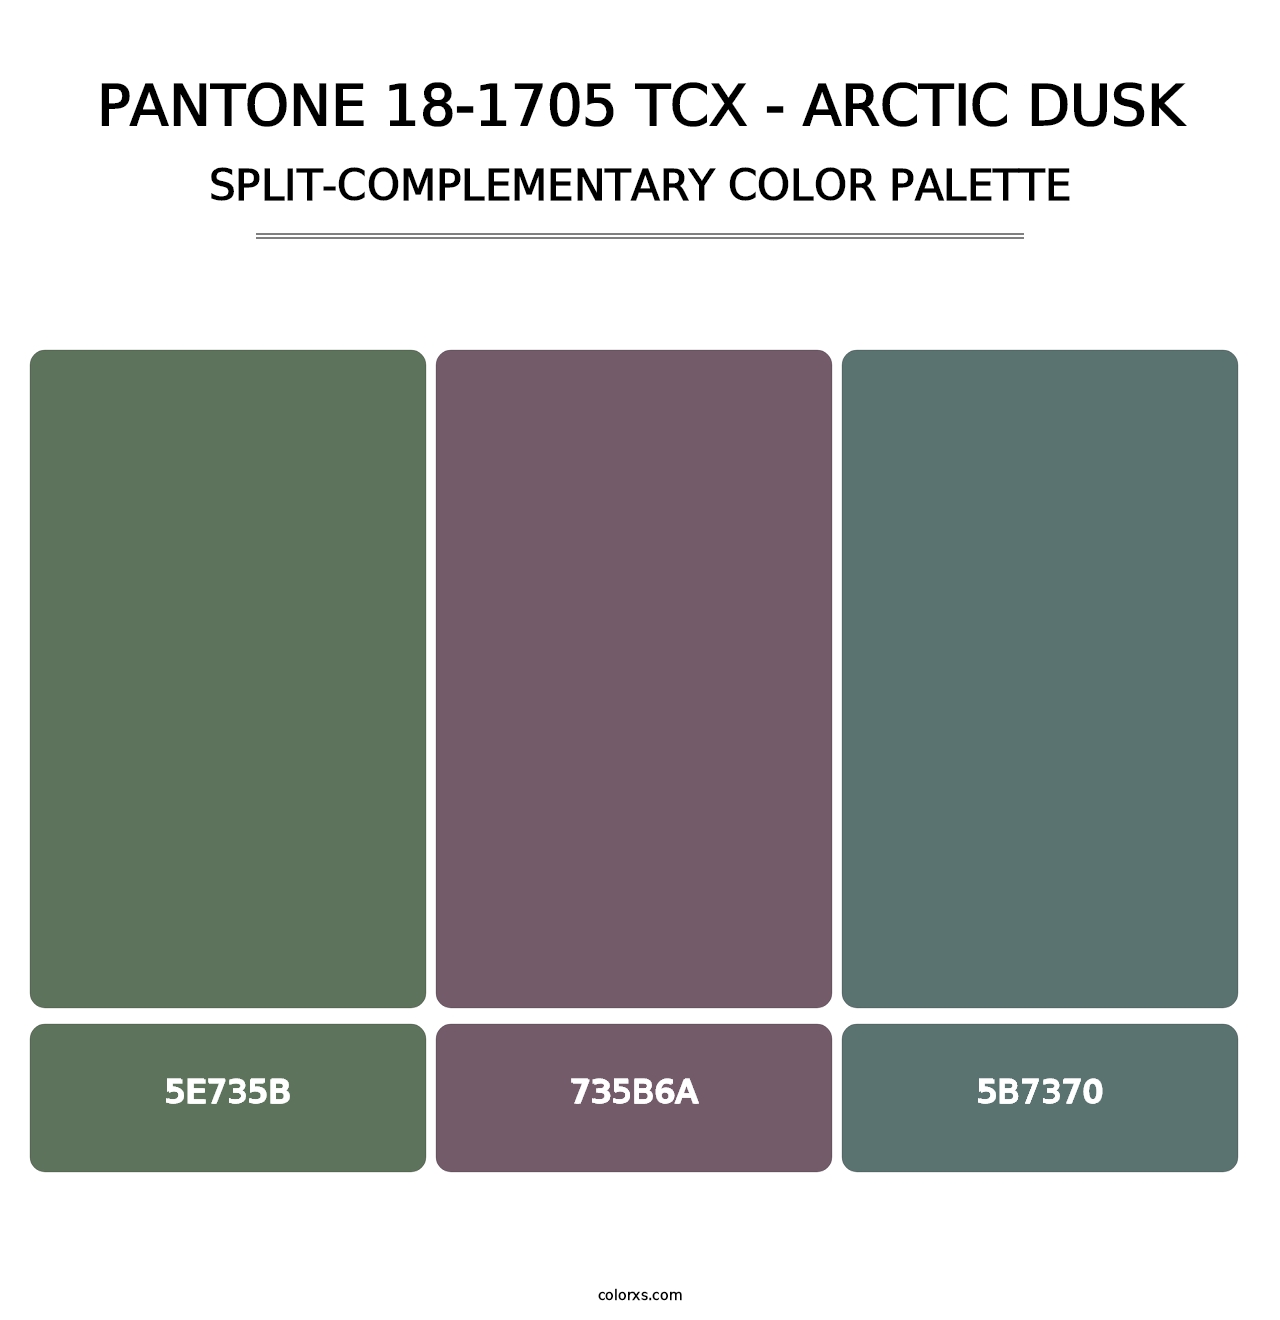 PANTONE 18-1705 TCX - Arctic Dusk - Split-Complementary Color Palette